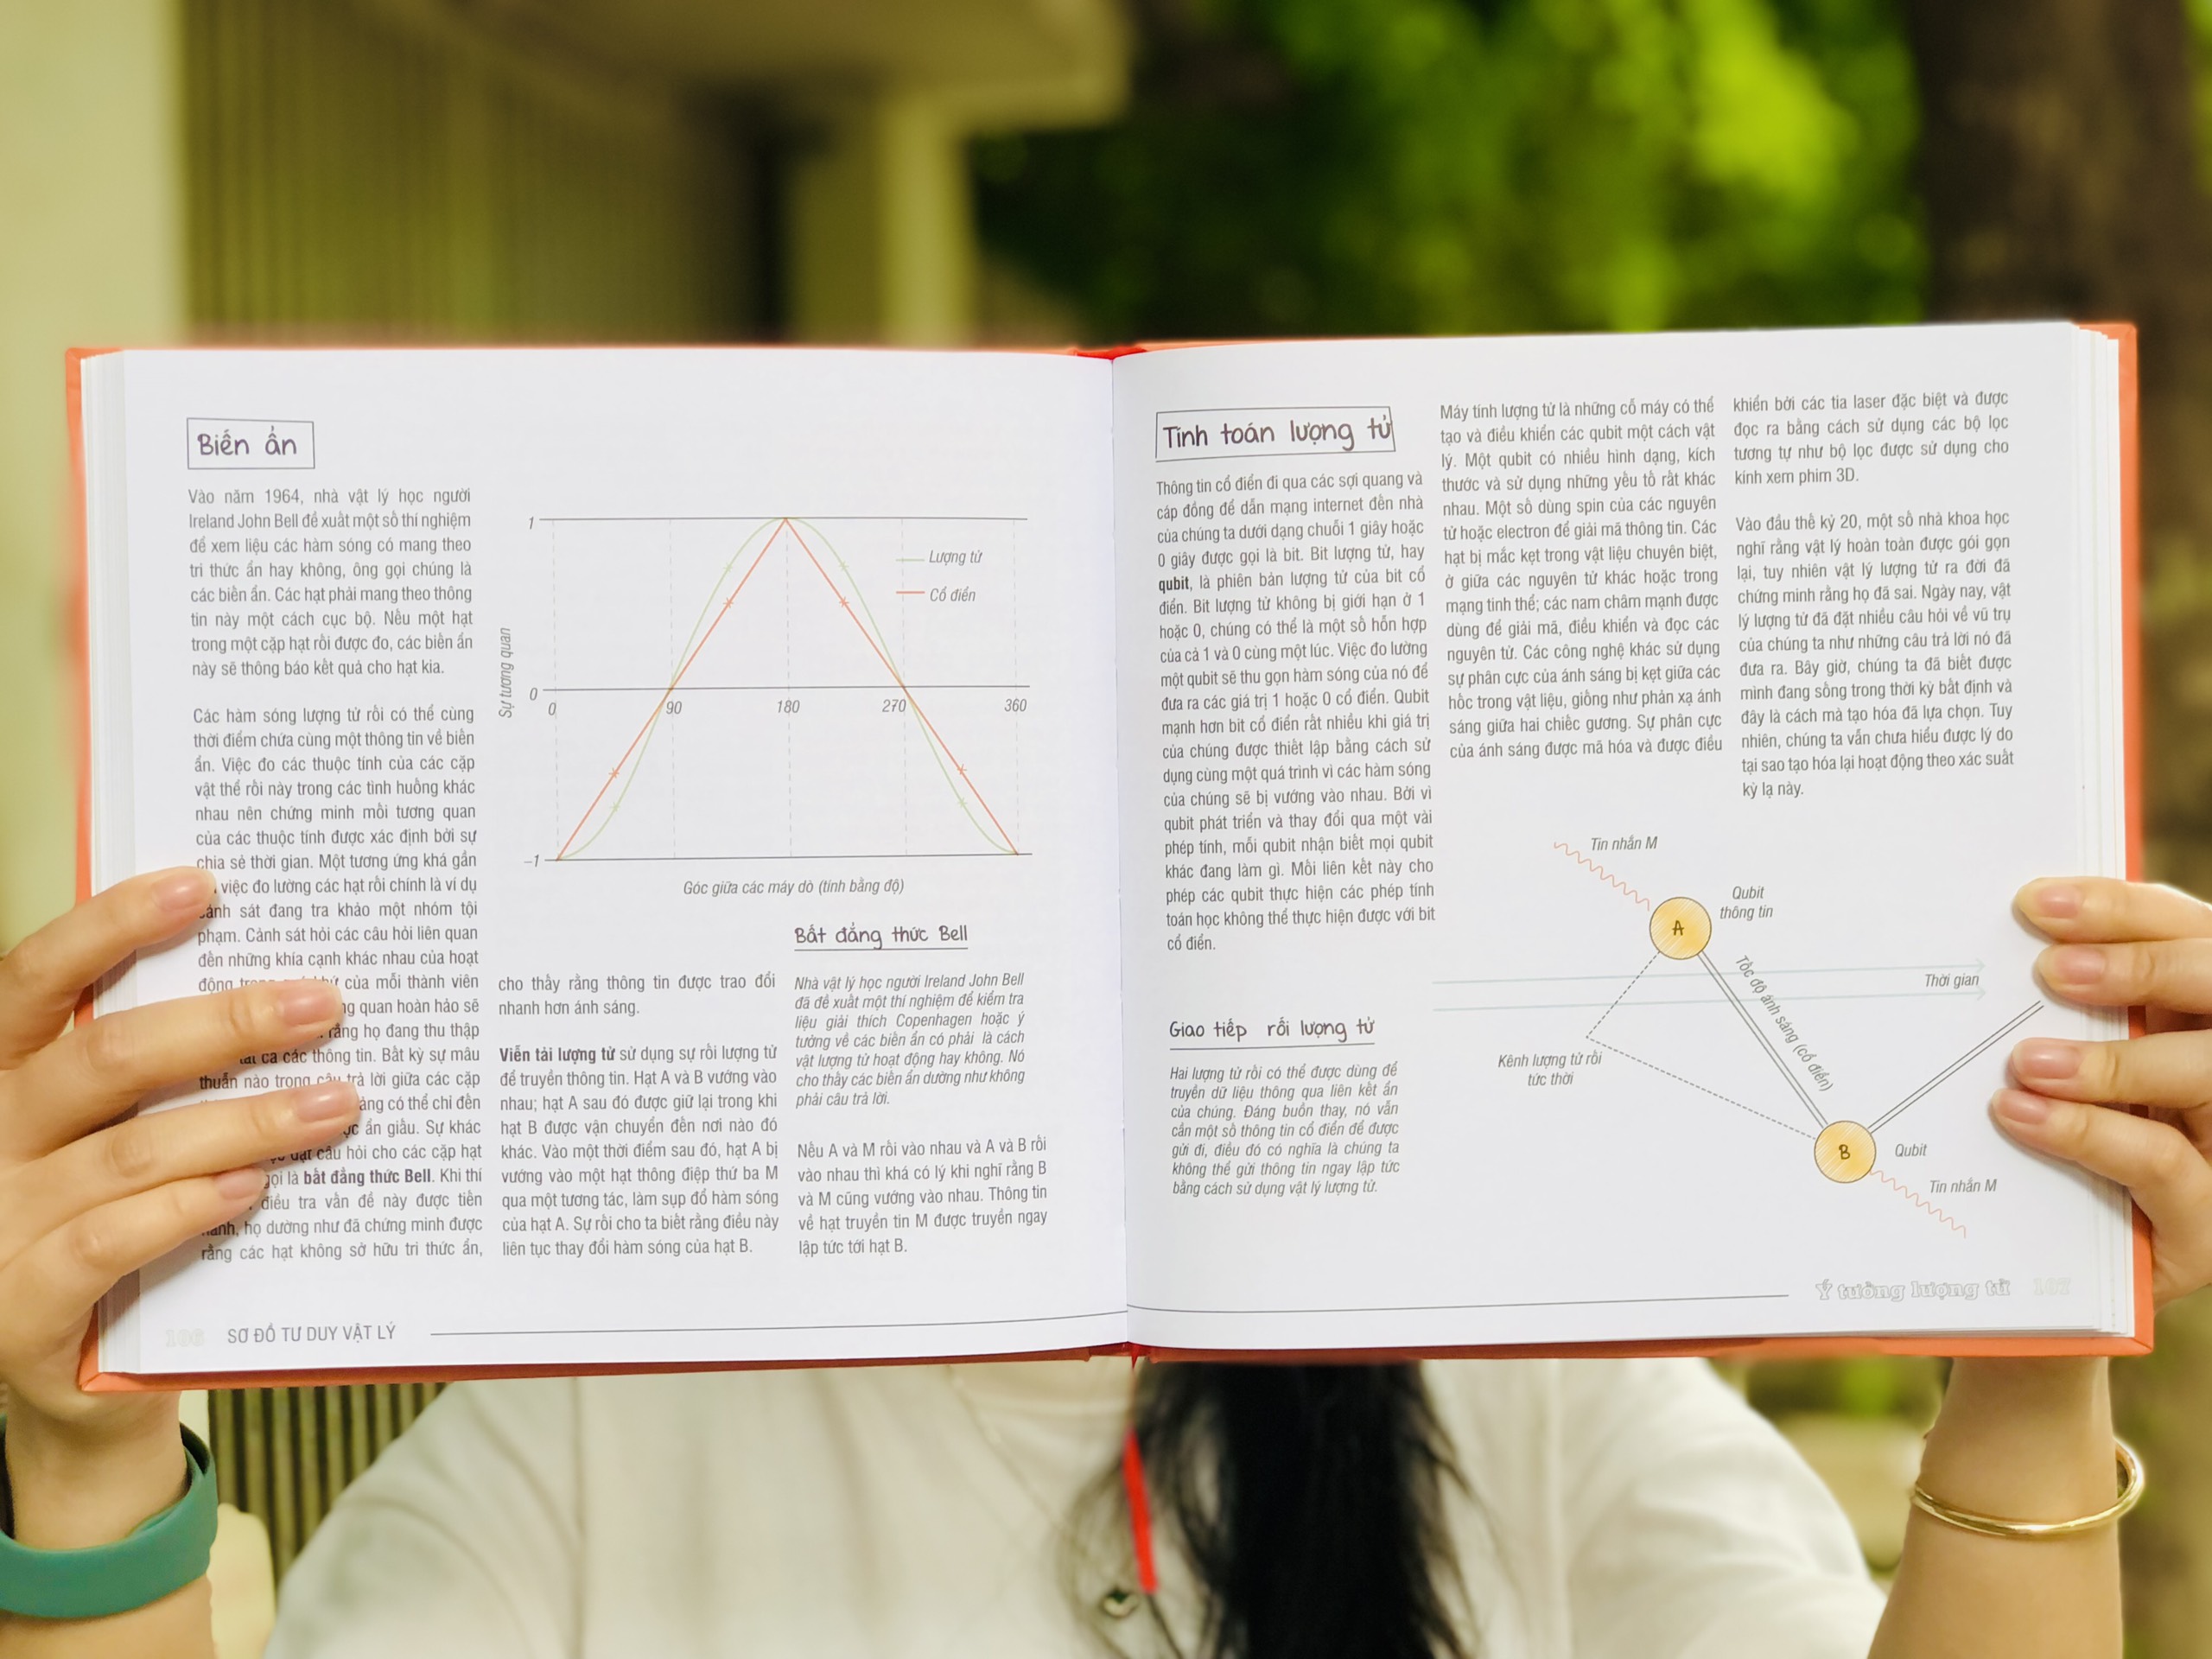 Sách vật lý - Sơ đồ tư duy vật lý ( mind map Physics ) - Tổng hợp kiến thức vật lý dưới sơ đồ tư duy - Á Châu Books, bìa cứng, in màu